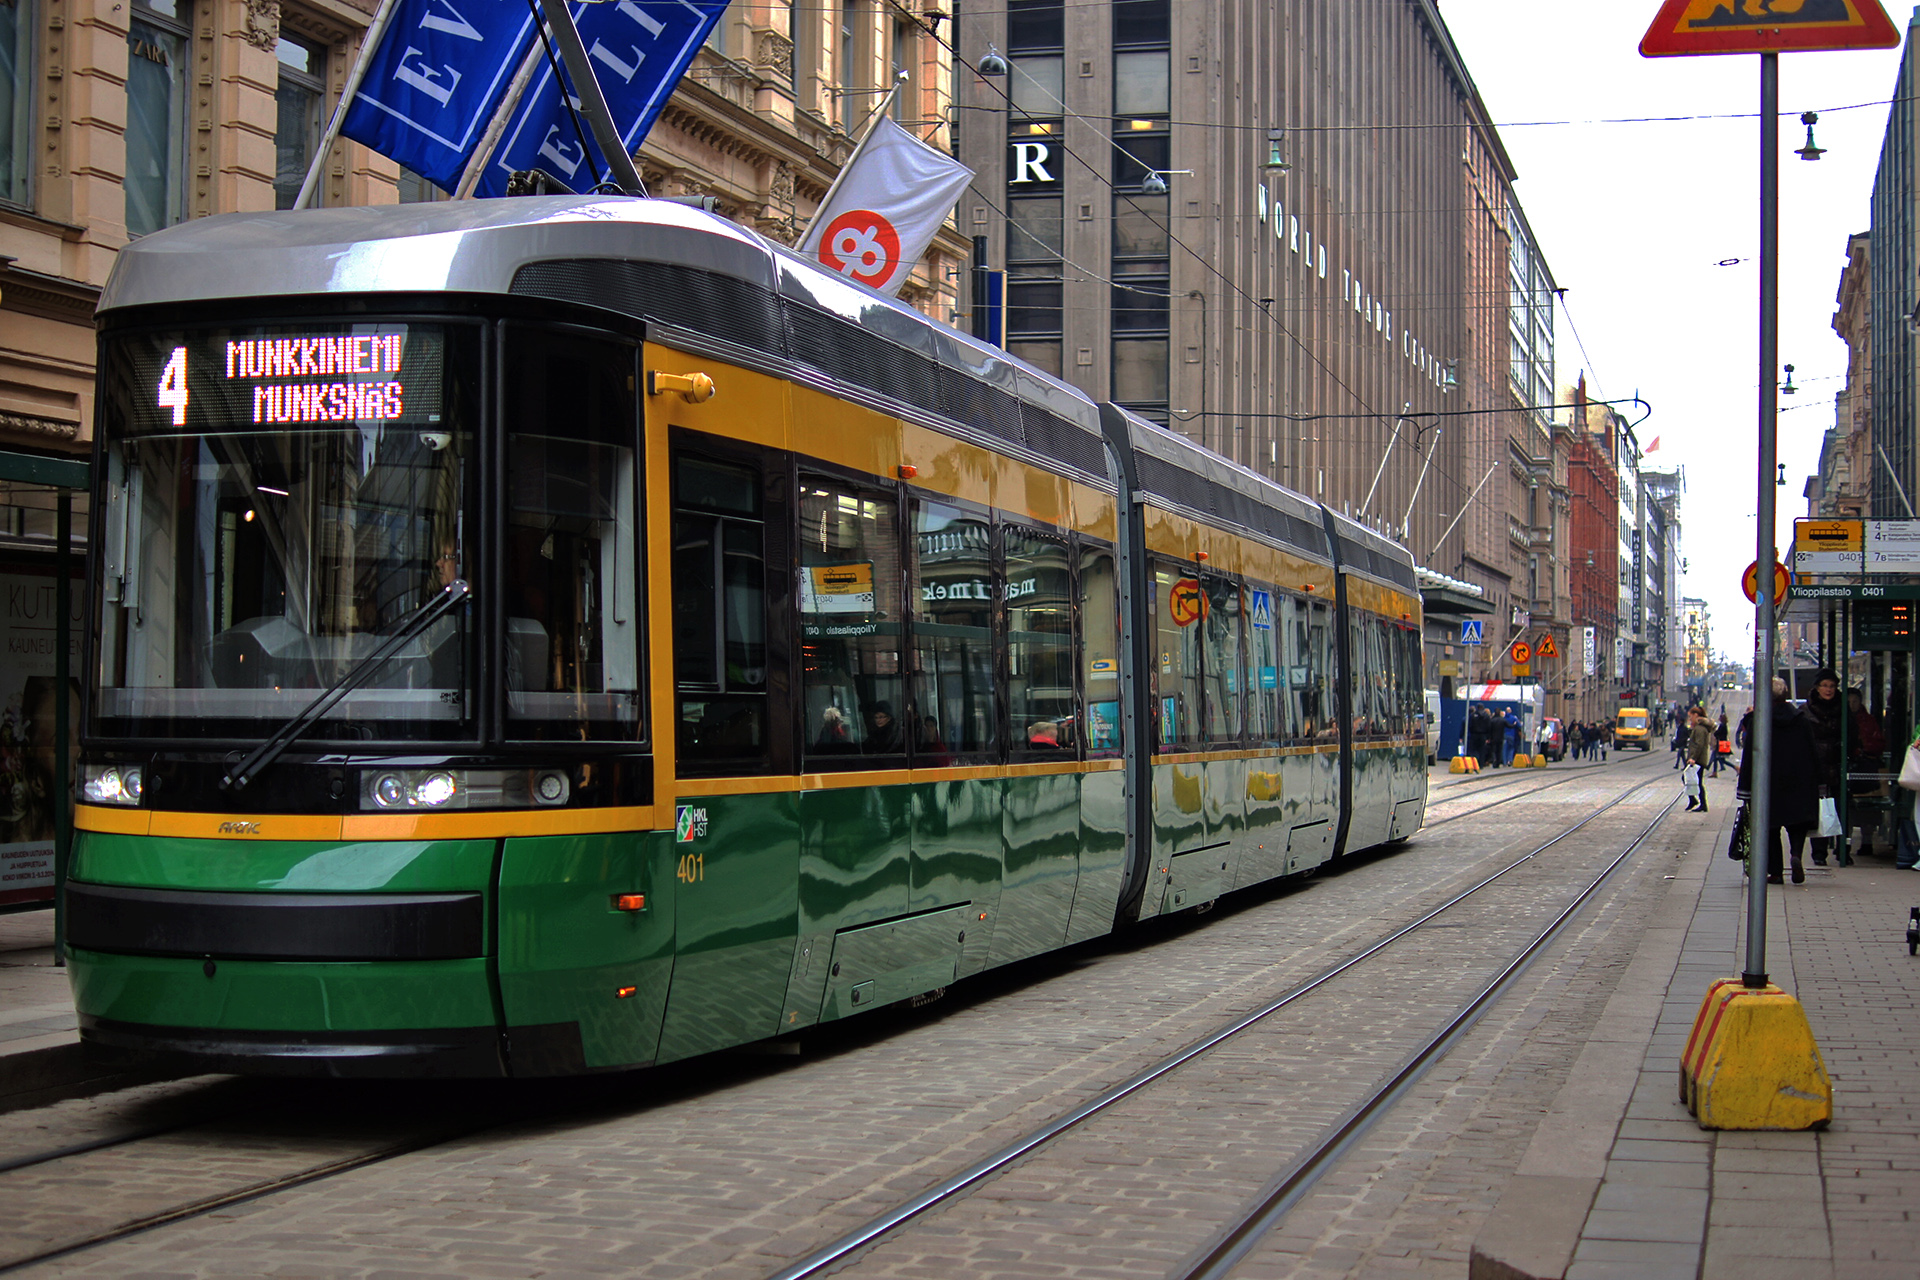 A tram in Helsinki city centre